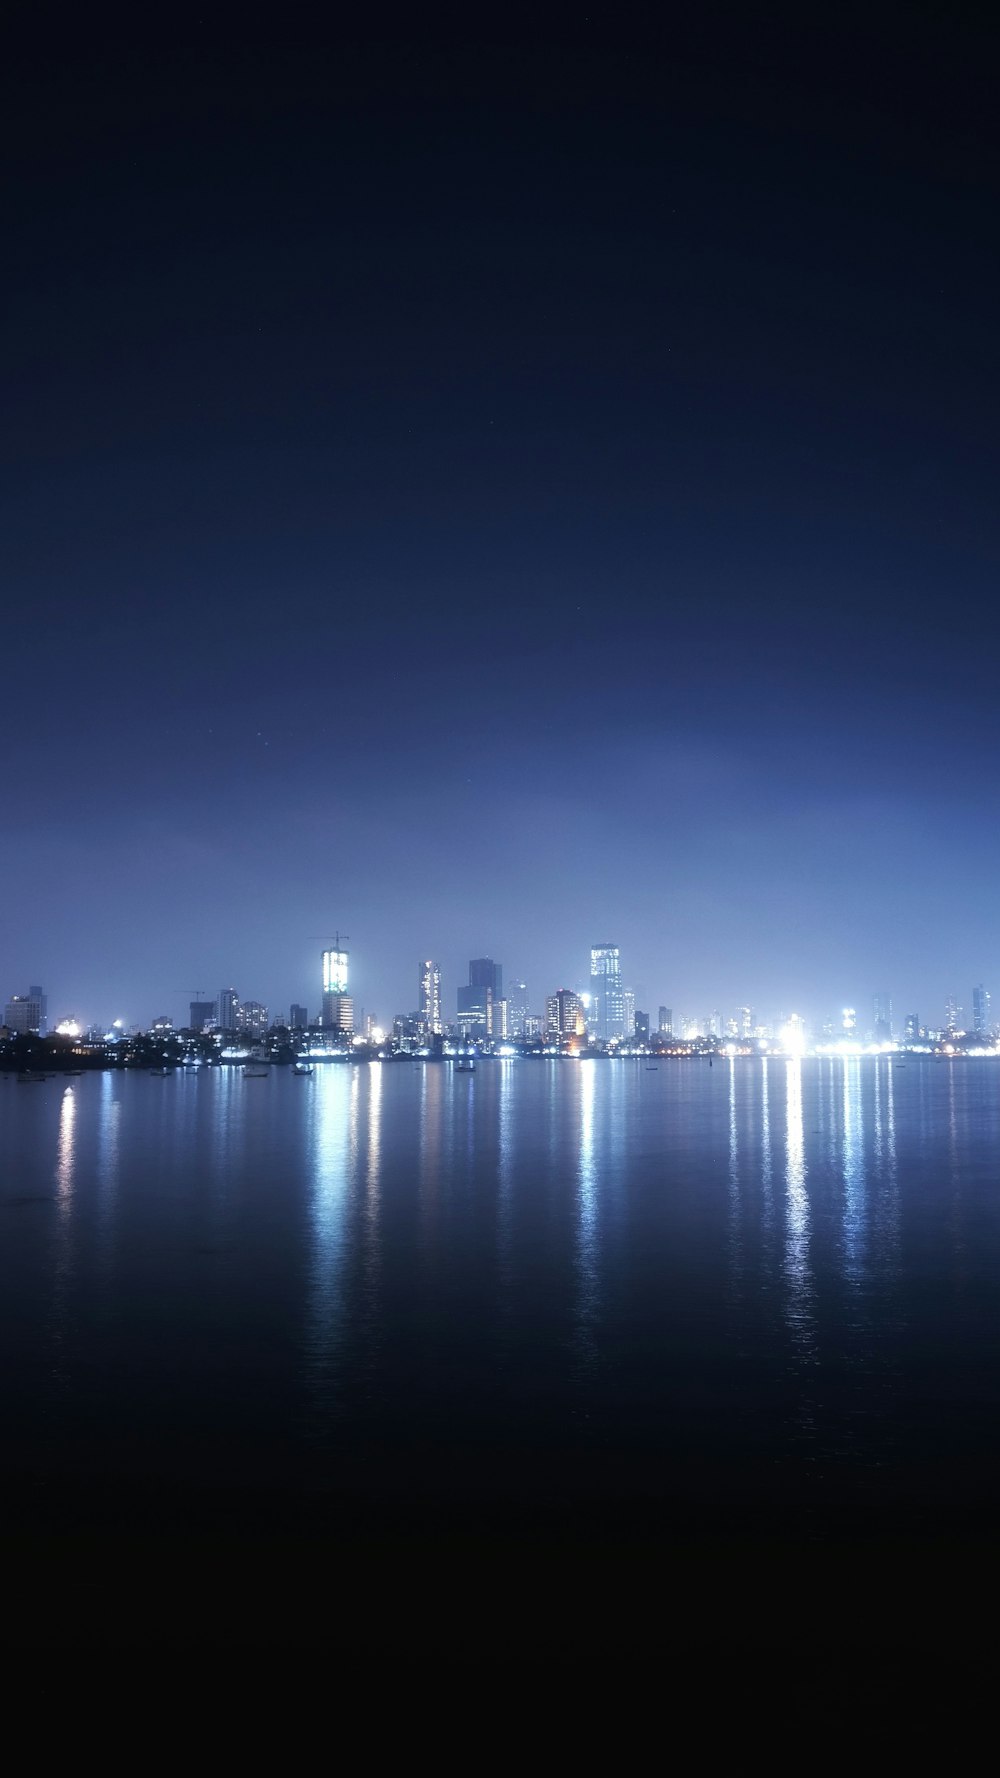 Fotografía panorámica de la ciudad durante la noche